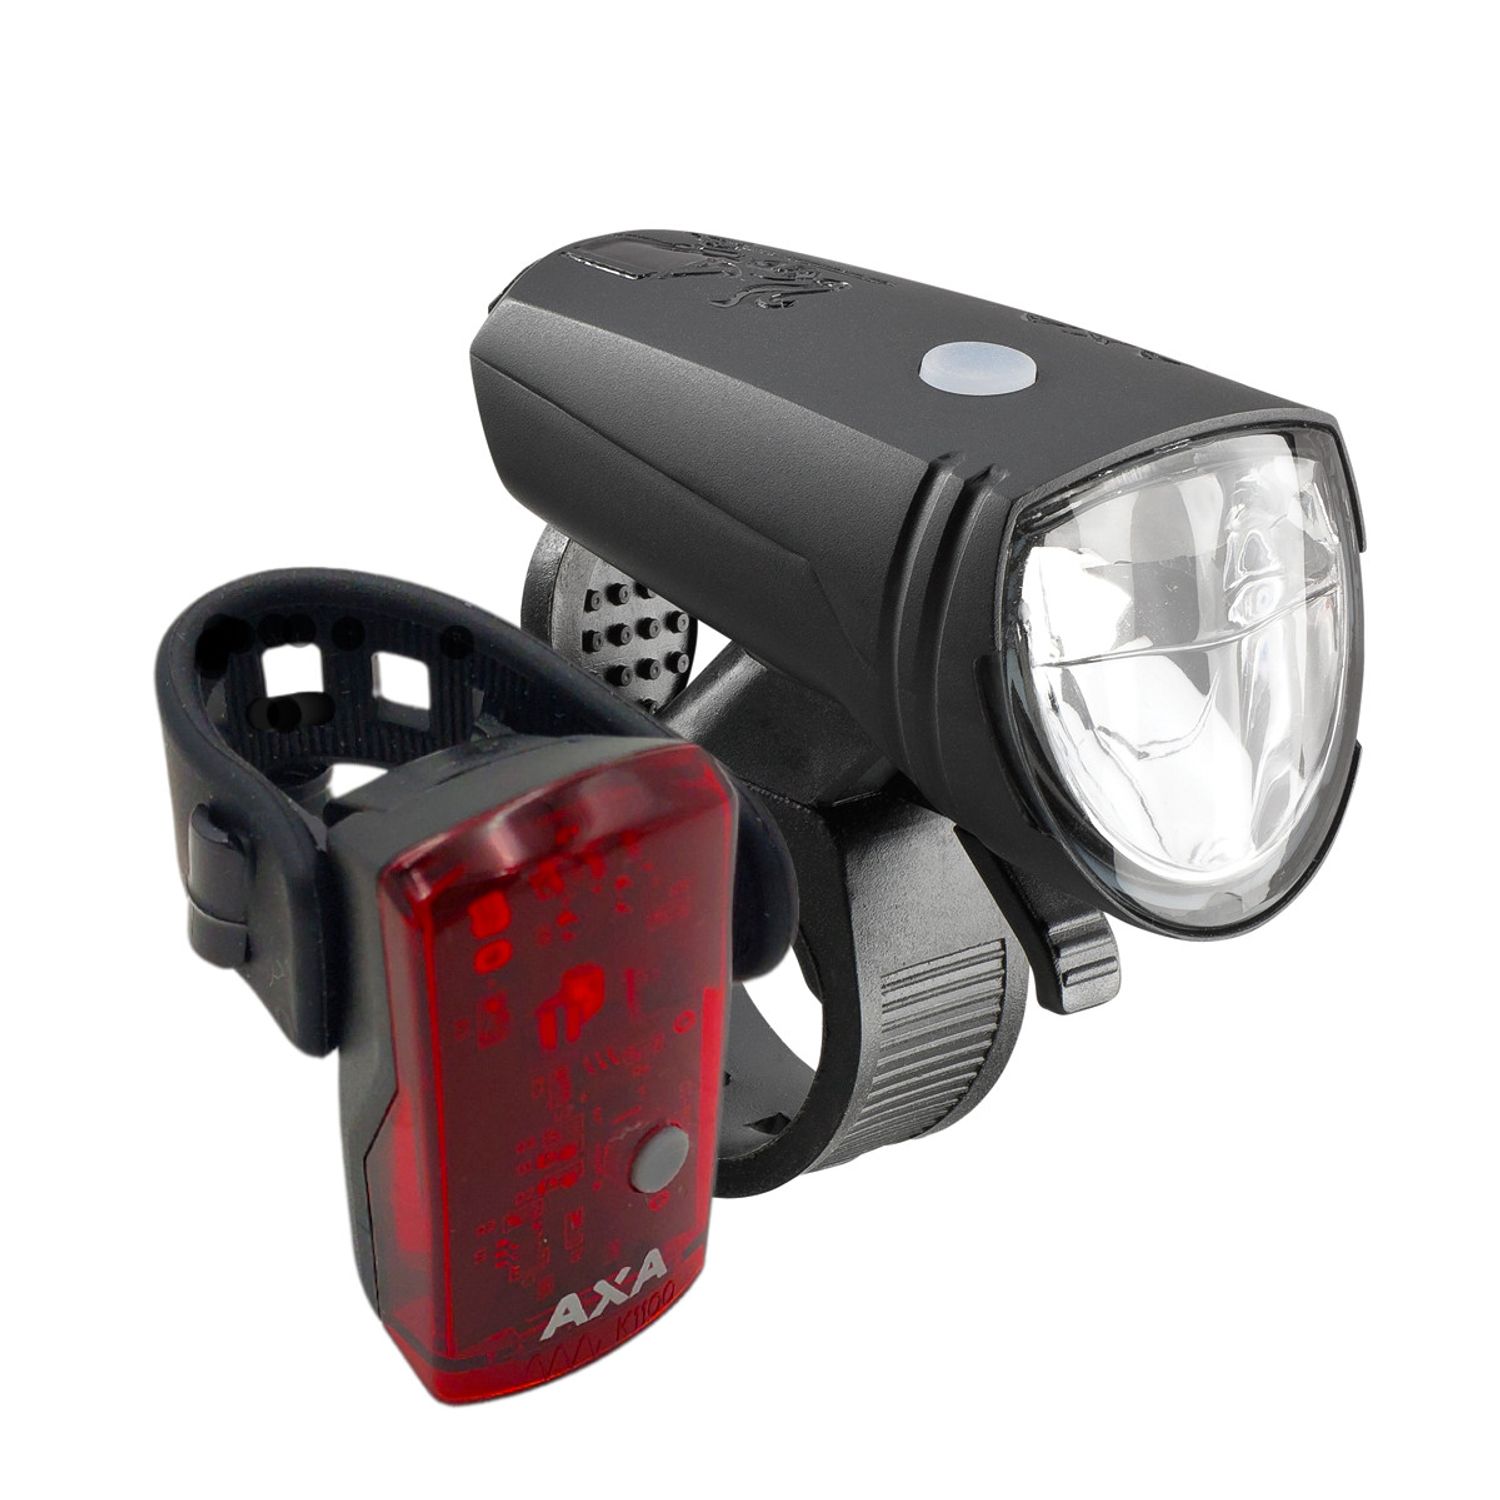 Fahrrad Lampe Licht LED Beleuchtung abnehmbar aufladbar Akku Zulassung StVZO